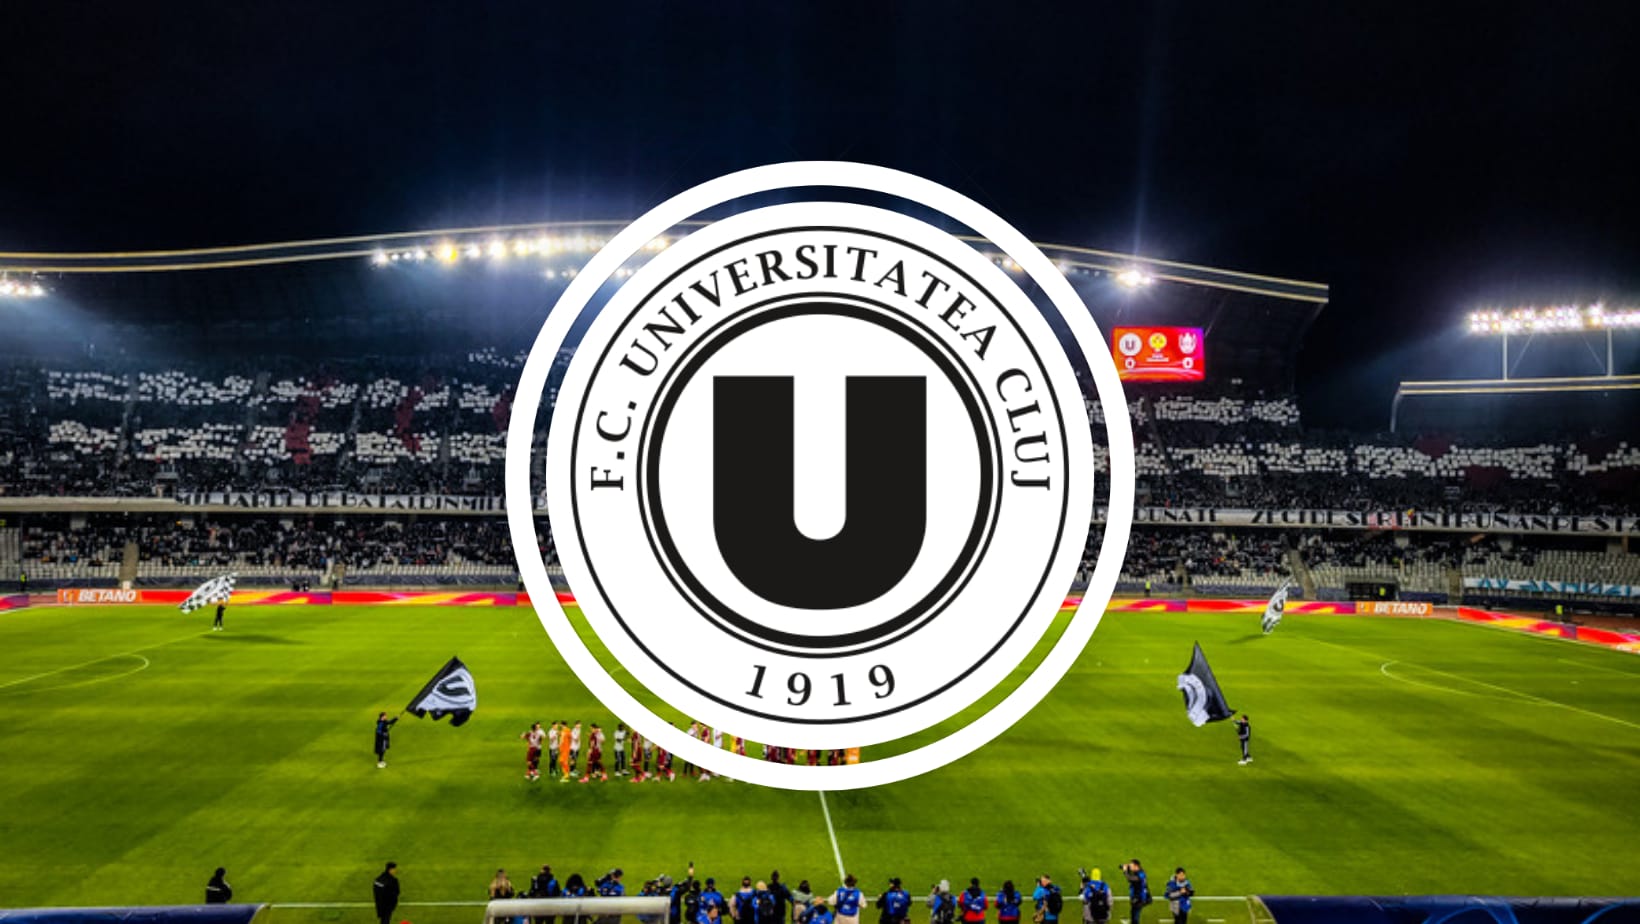 Conducerea Universității Cluj contestă poziția în topul celor mai iubite echipe din Superliga